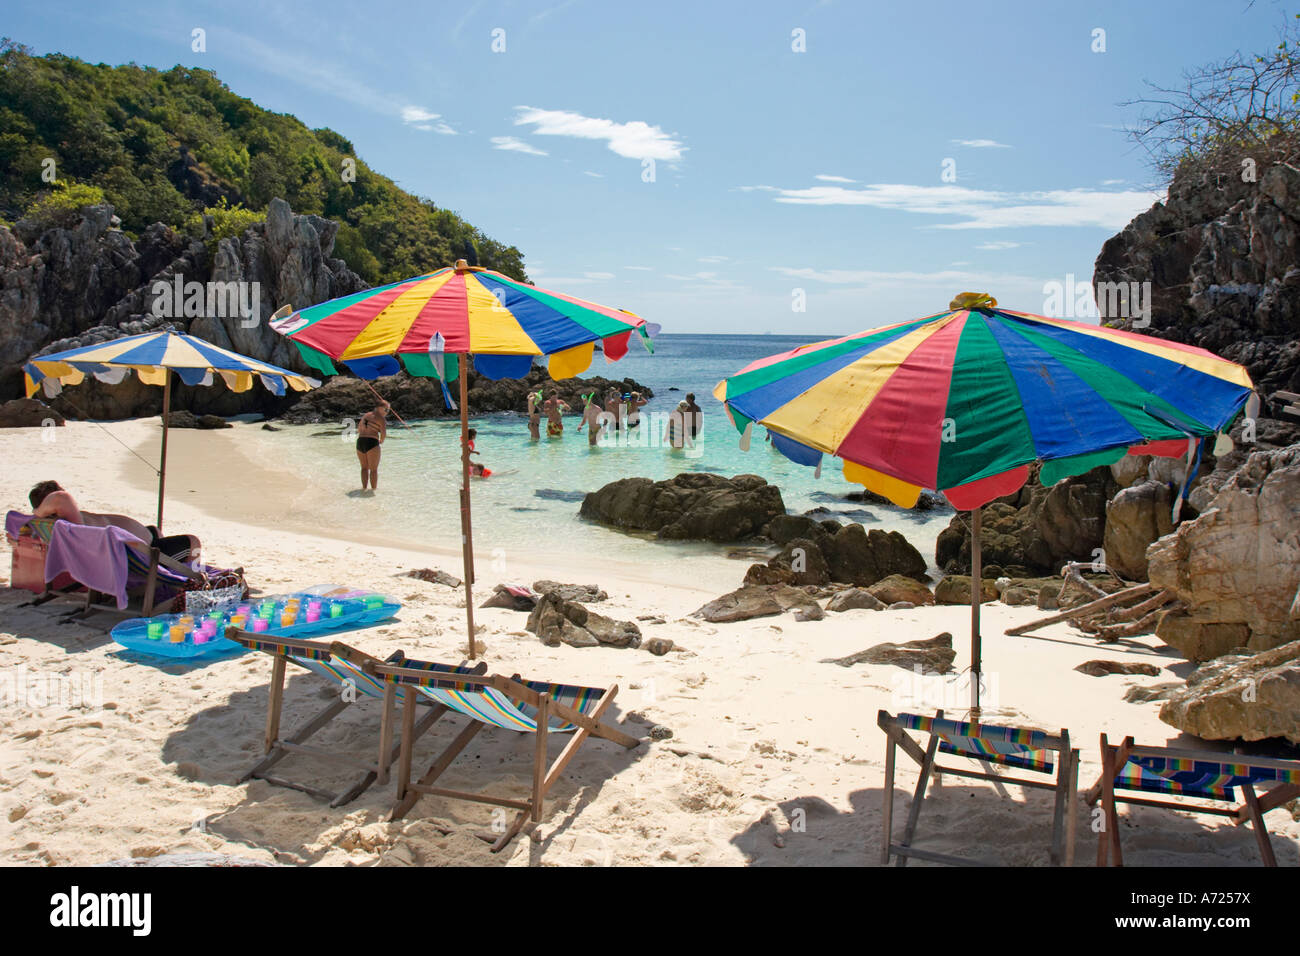 Sedie a sdraio e ombrelloni colorati sulla spiaggia di sabbia bianca. Koh Khai, una piccola isola corallina vicino a Phuket, Tailandia. Foto Stock